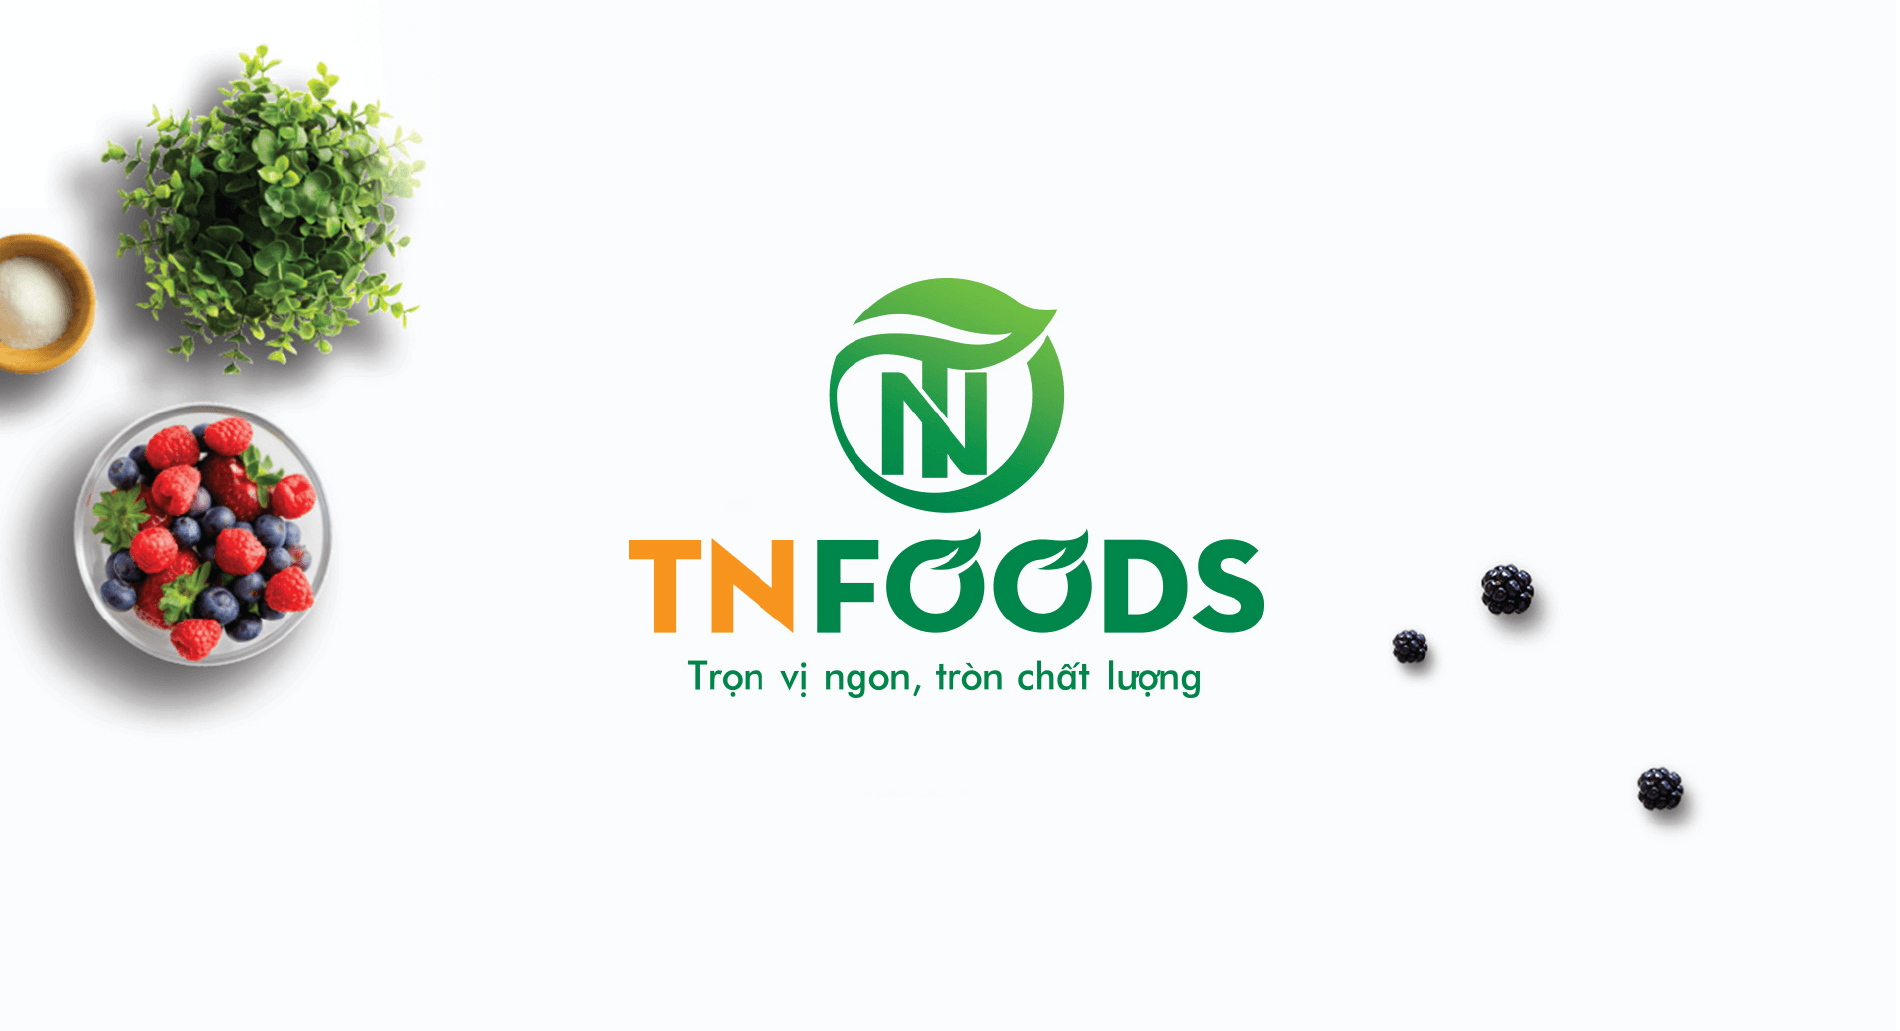 Dự án thiết kế thương hiệu, thiết kế website, nhận diện TN FOODS - Thiết kế Logo